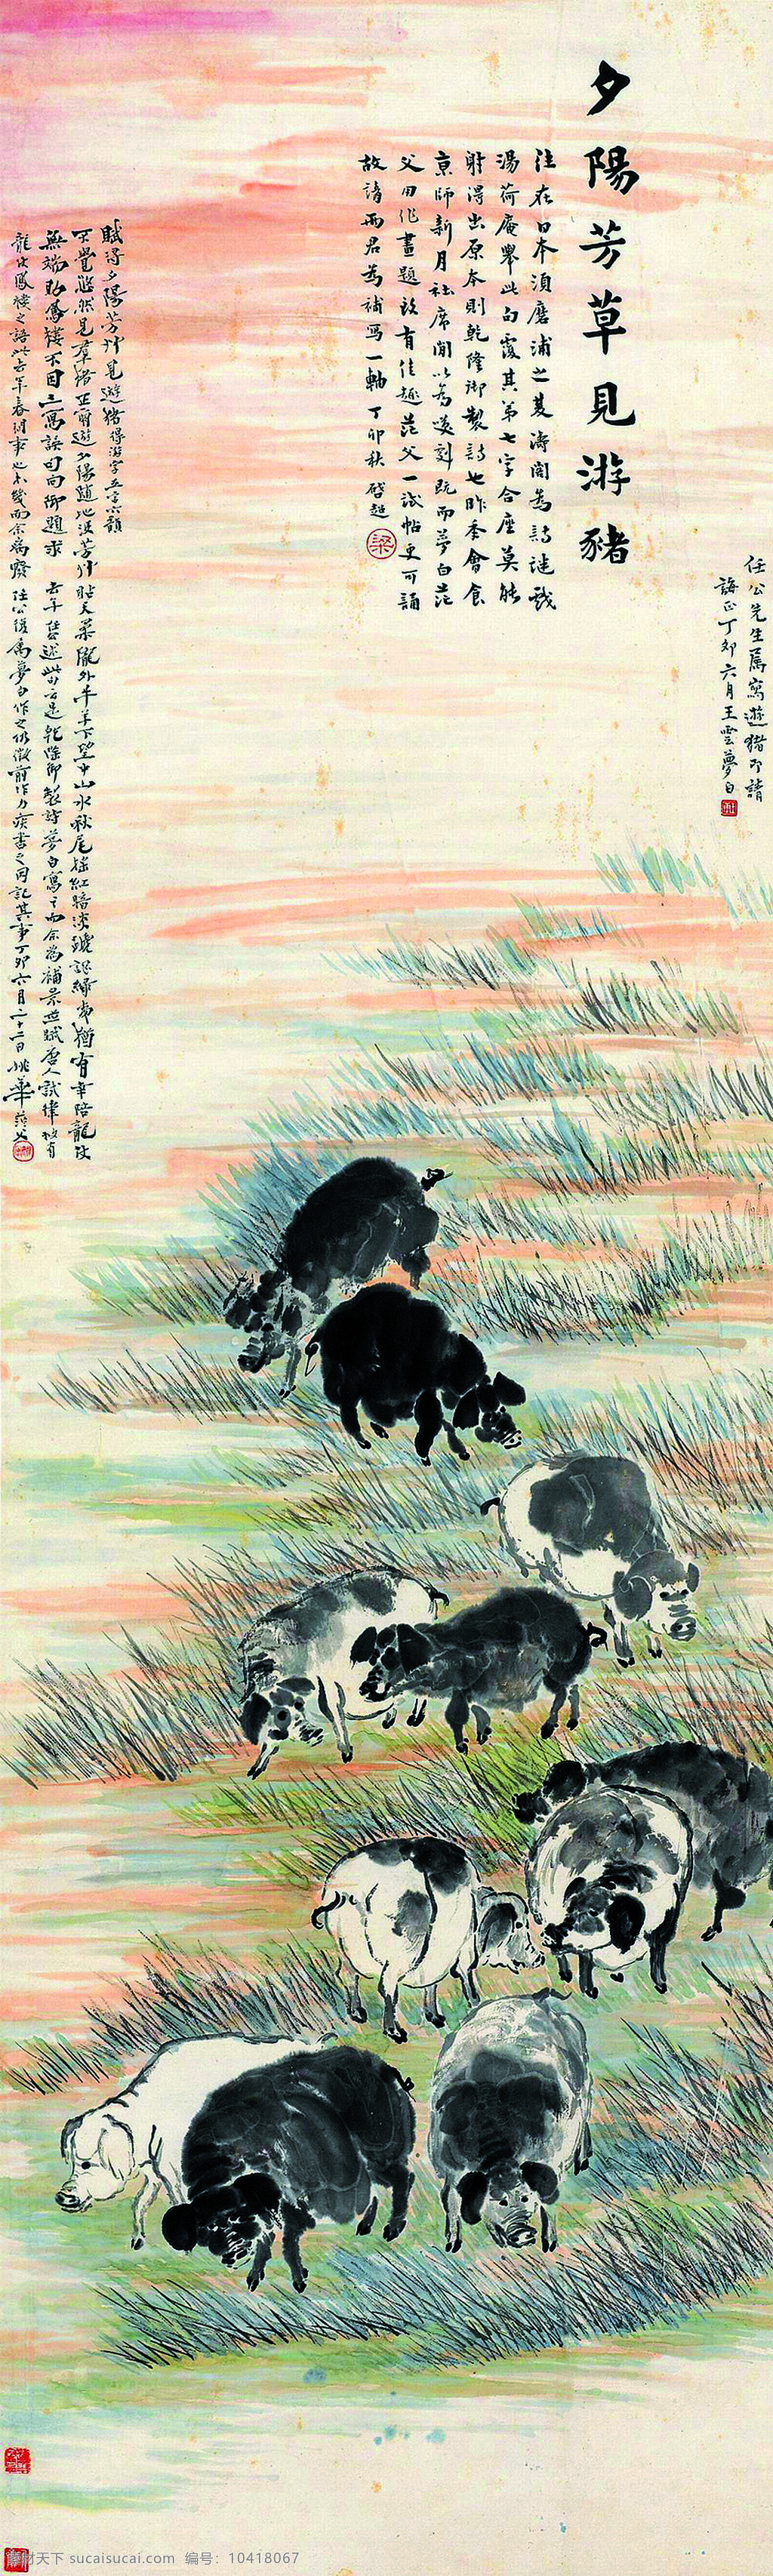 夕阳 芳草 见 游 猪 美术 中国画 动物画 家猪 土猪 草地 国画艺术 绘画书法 文化艺术